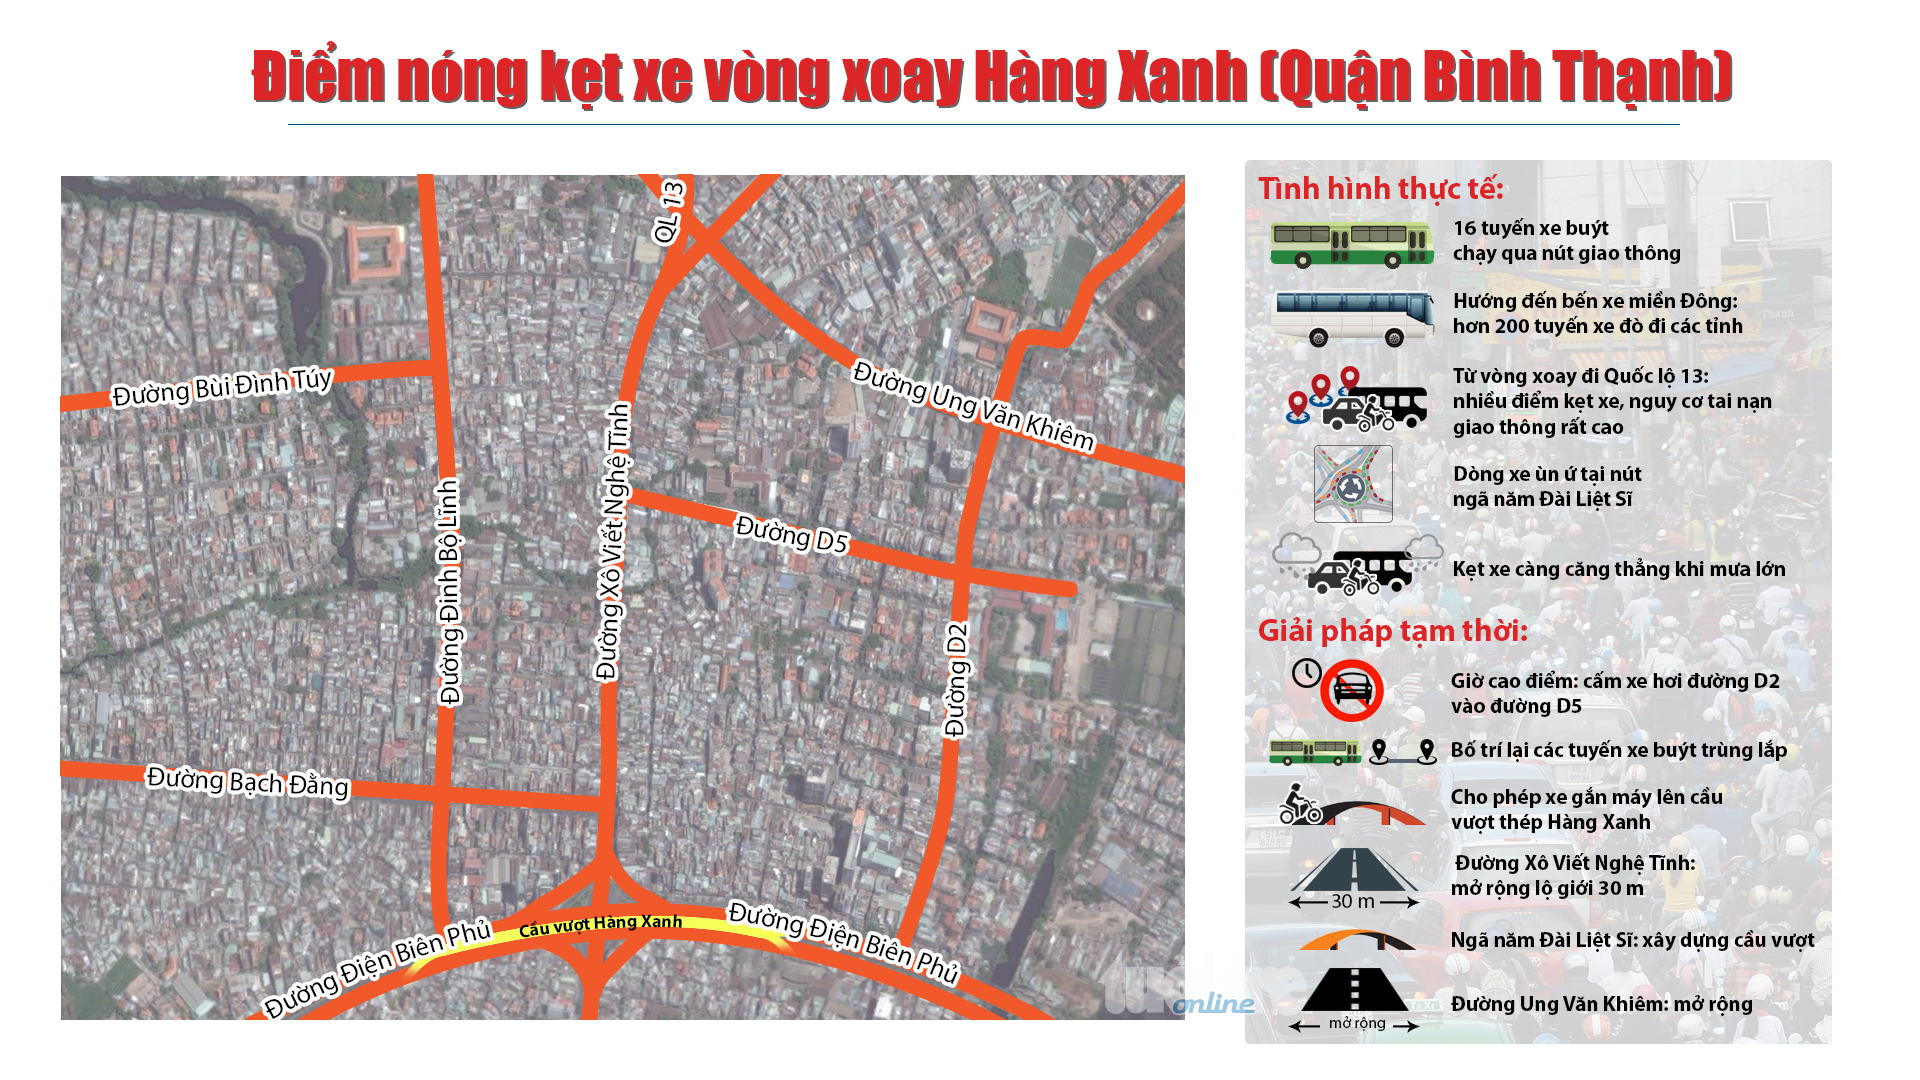 Điểm nóng kẹt xe vòng xoay Hàng Xanh (quận Bình Thạnh): thực trạng và giải pháp đề xuất - Đồ họa: Việt Thái